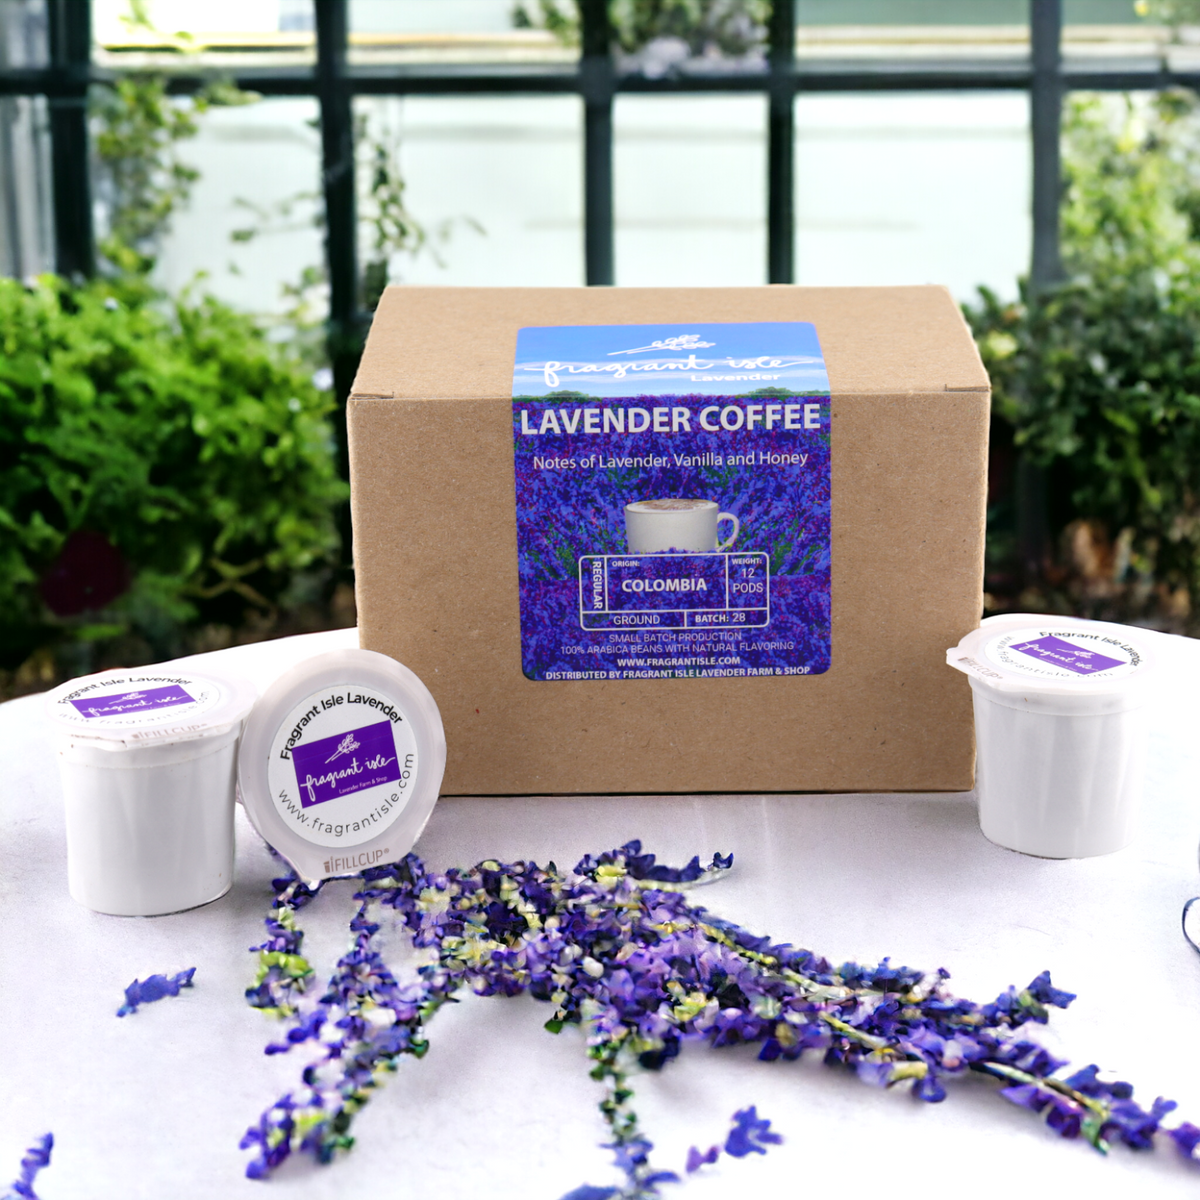 Lavender Coffee 12-Keurig Pods